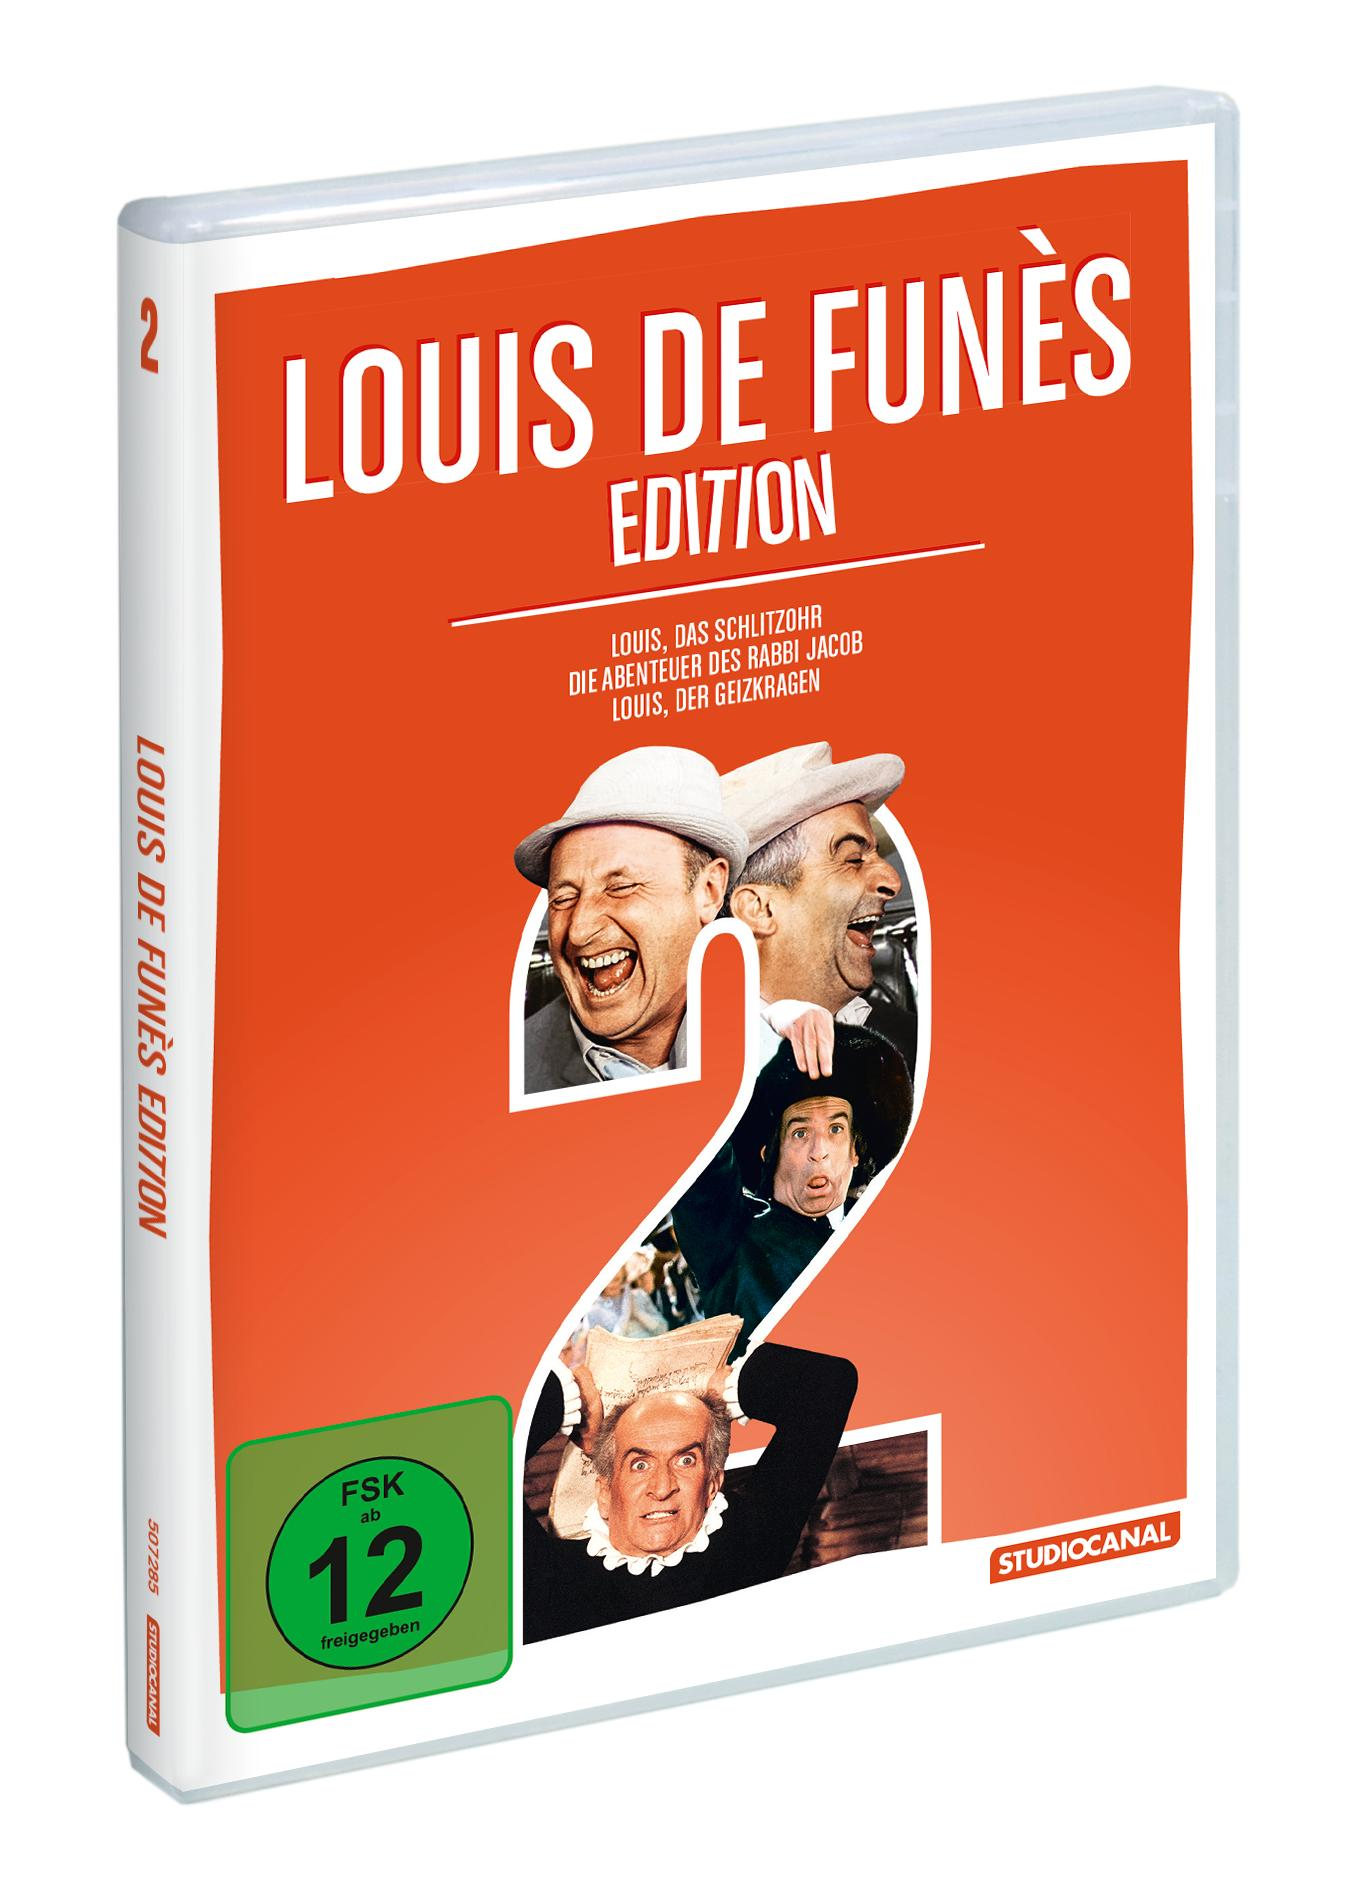 Louis de Funès Edition 2 DVD